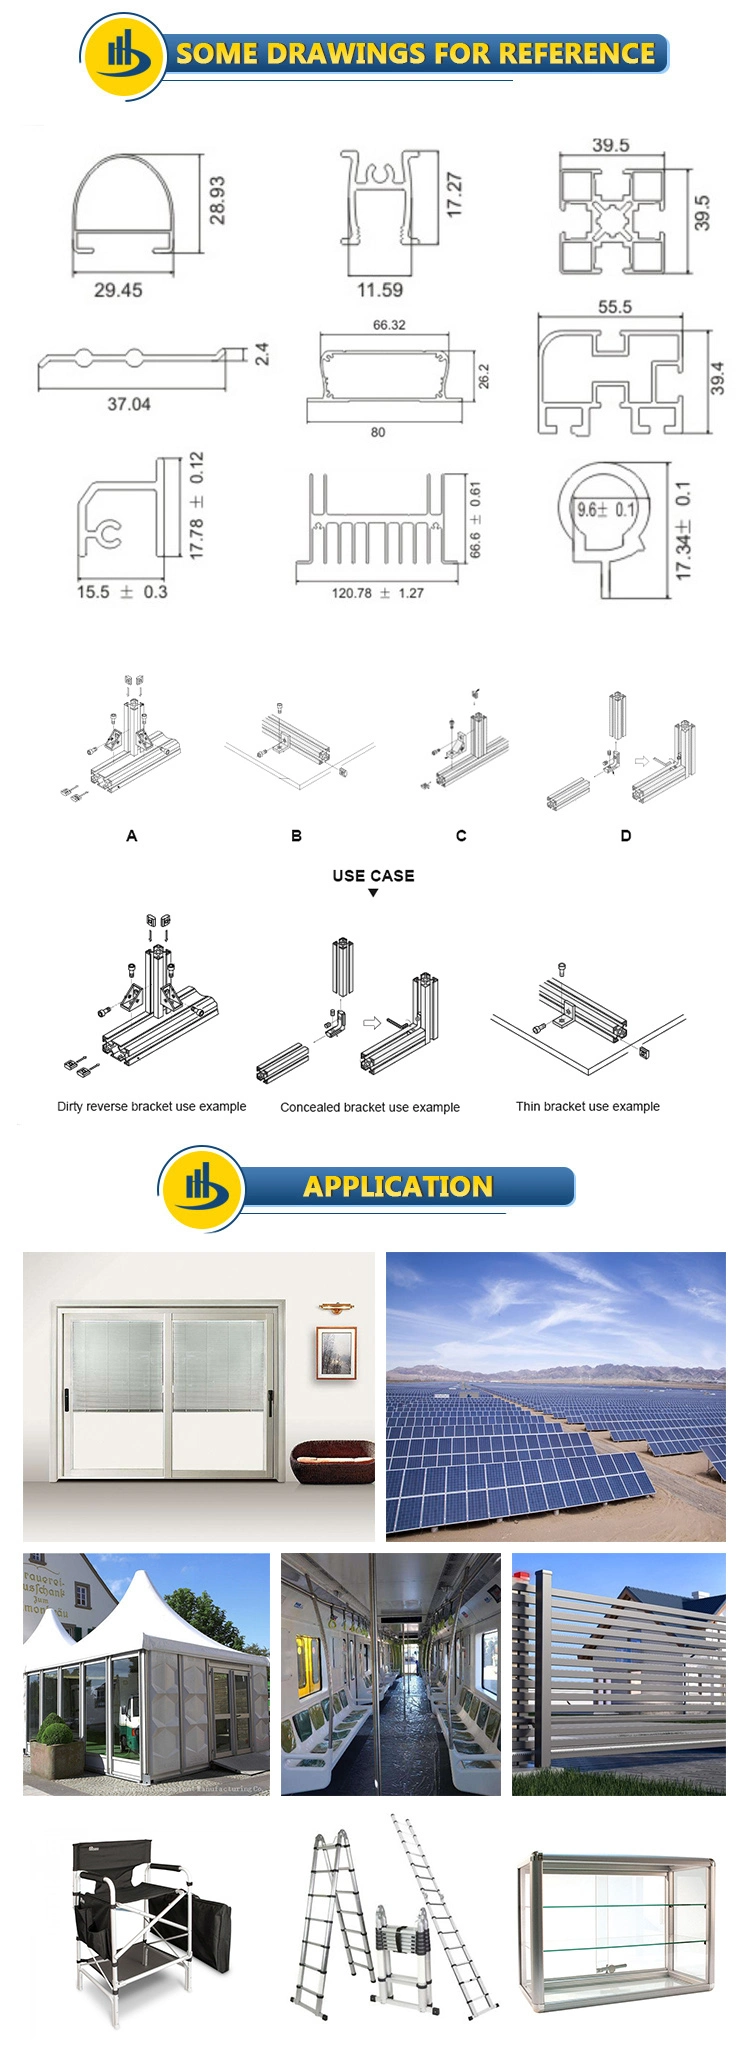 Aluminium Profile for Windows and Doors, Aluminum Extrusion Profile, Aluminum Window, Aluminum Doors